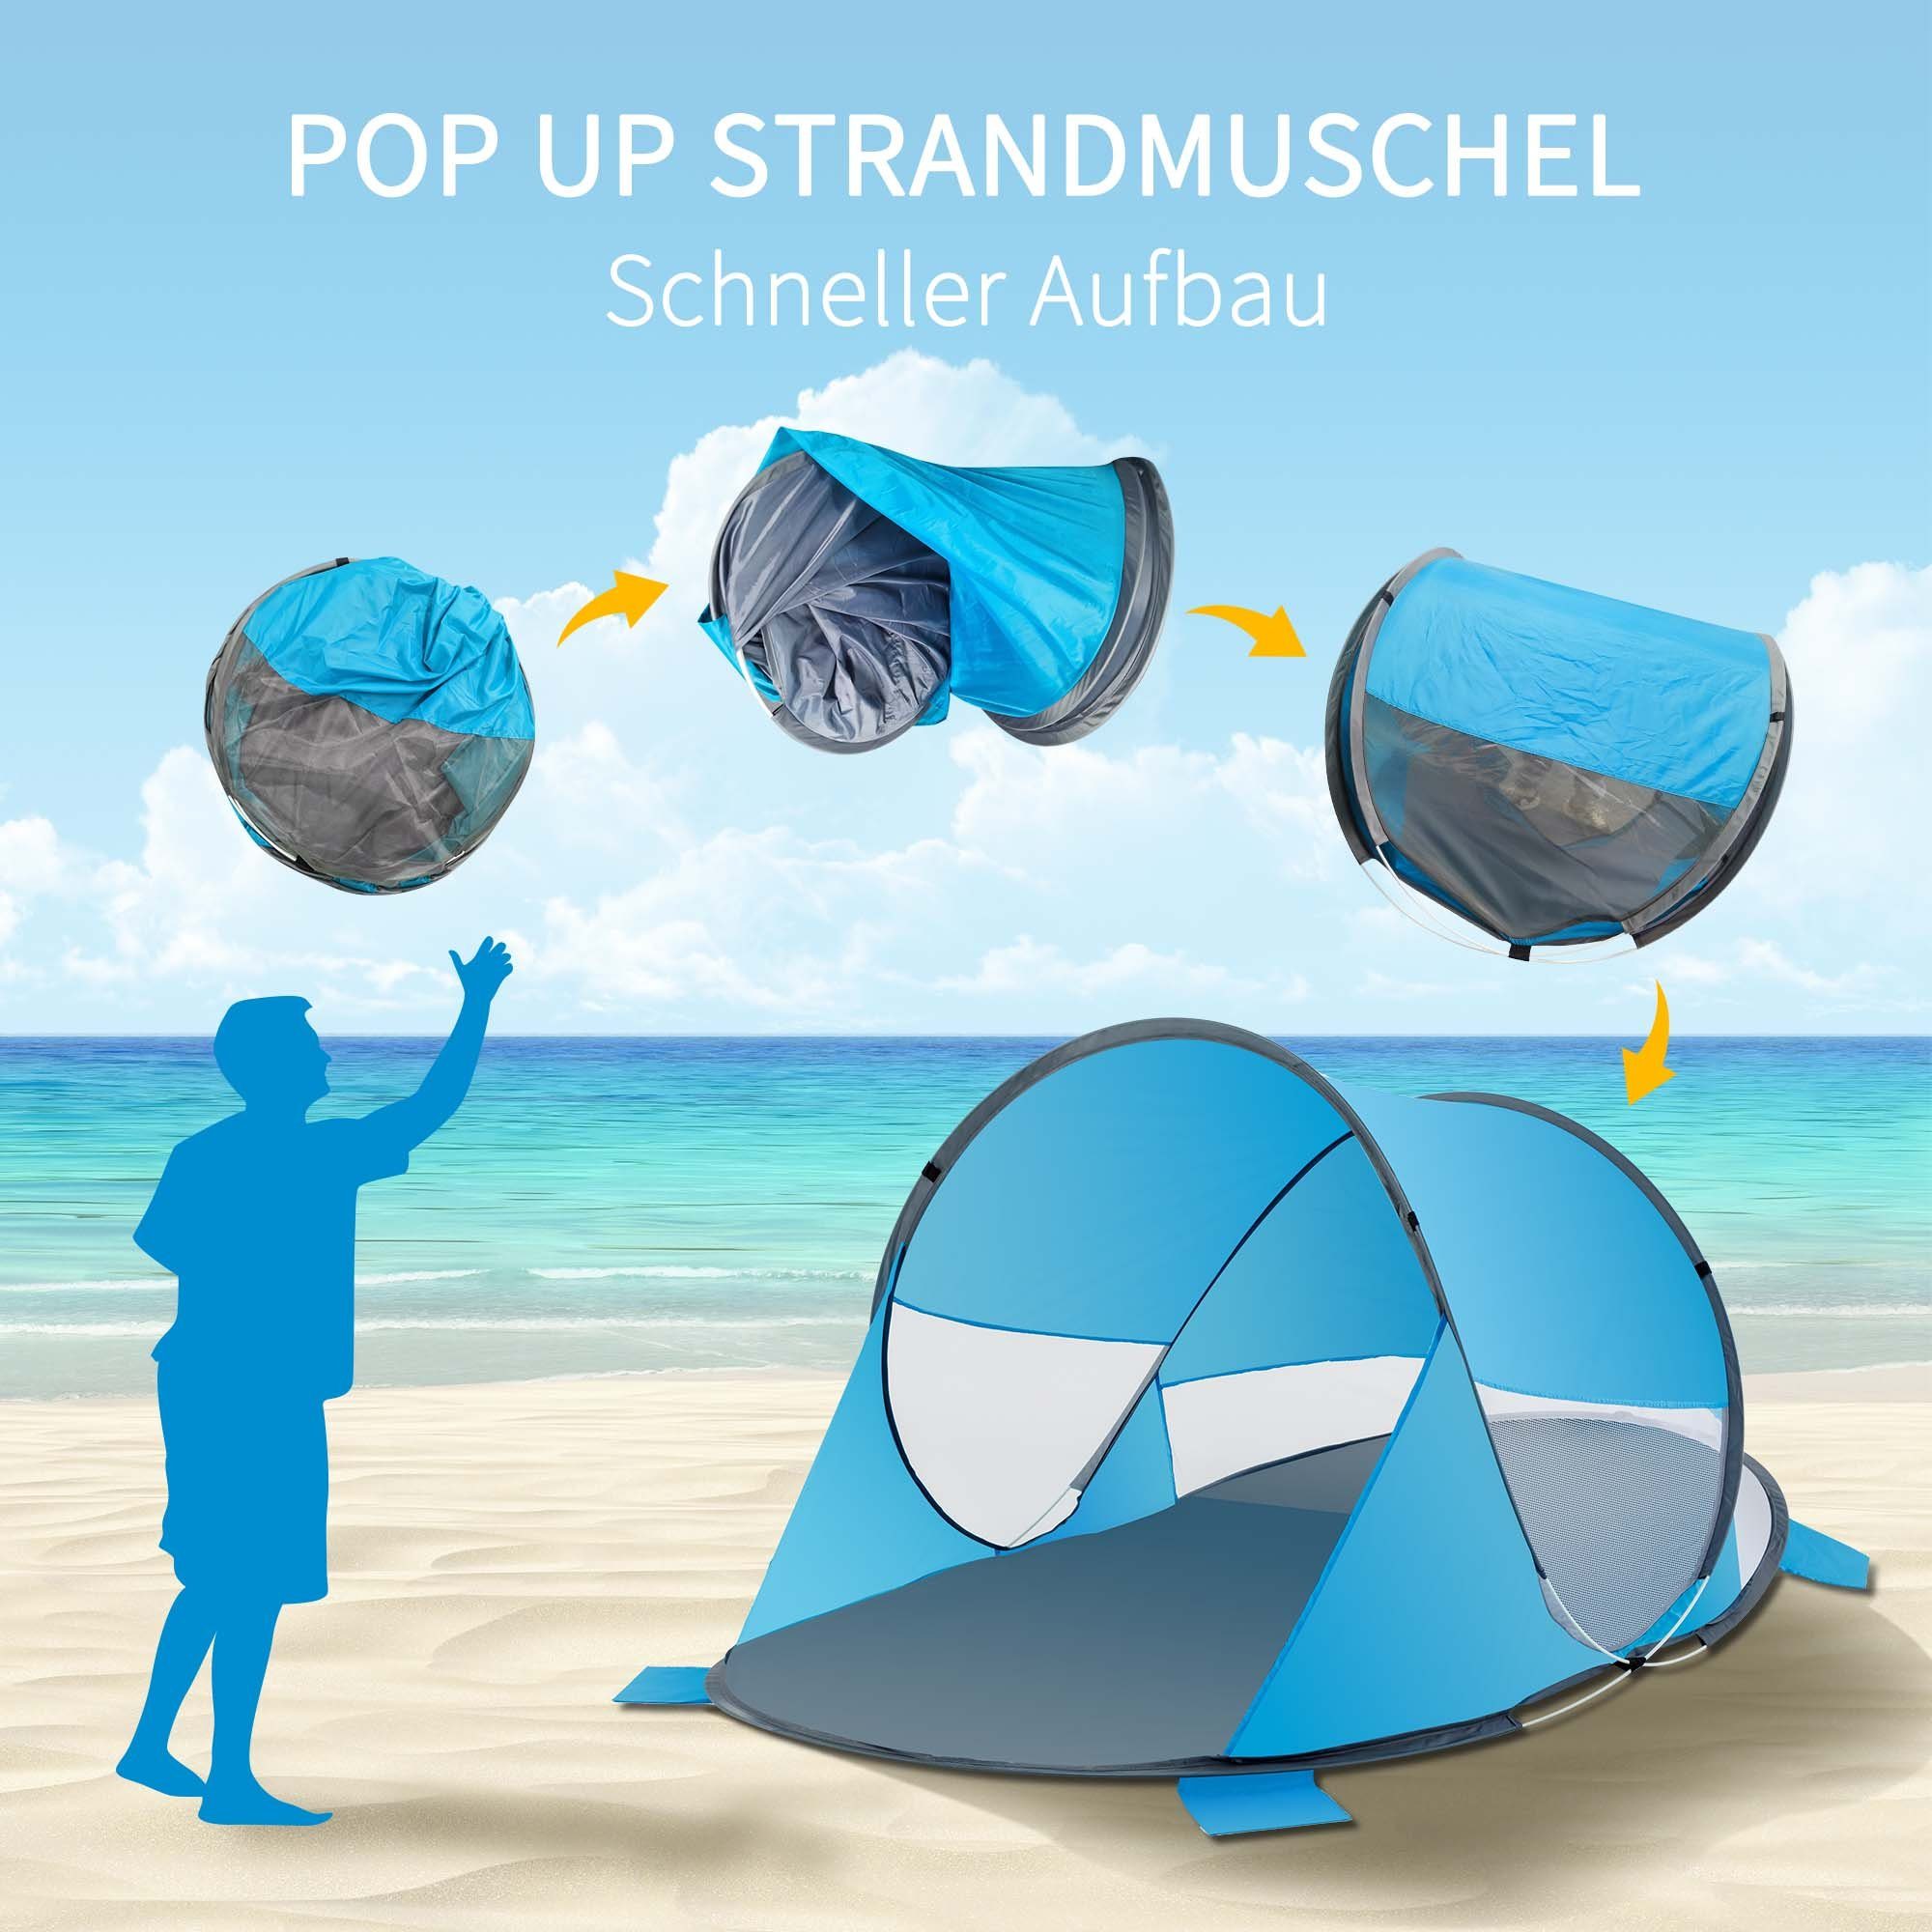 Duhome Polyester Strandmuschel, Zelt Wetter- Up Pop Strandmuschel Grau+Blau Strandzelt und Sichtschutz